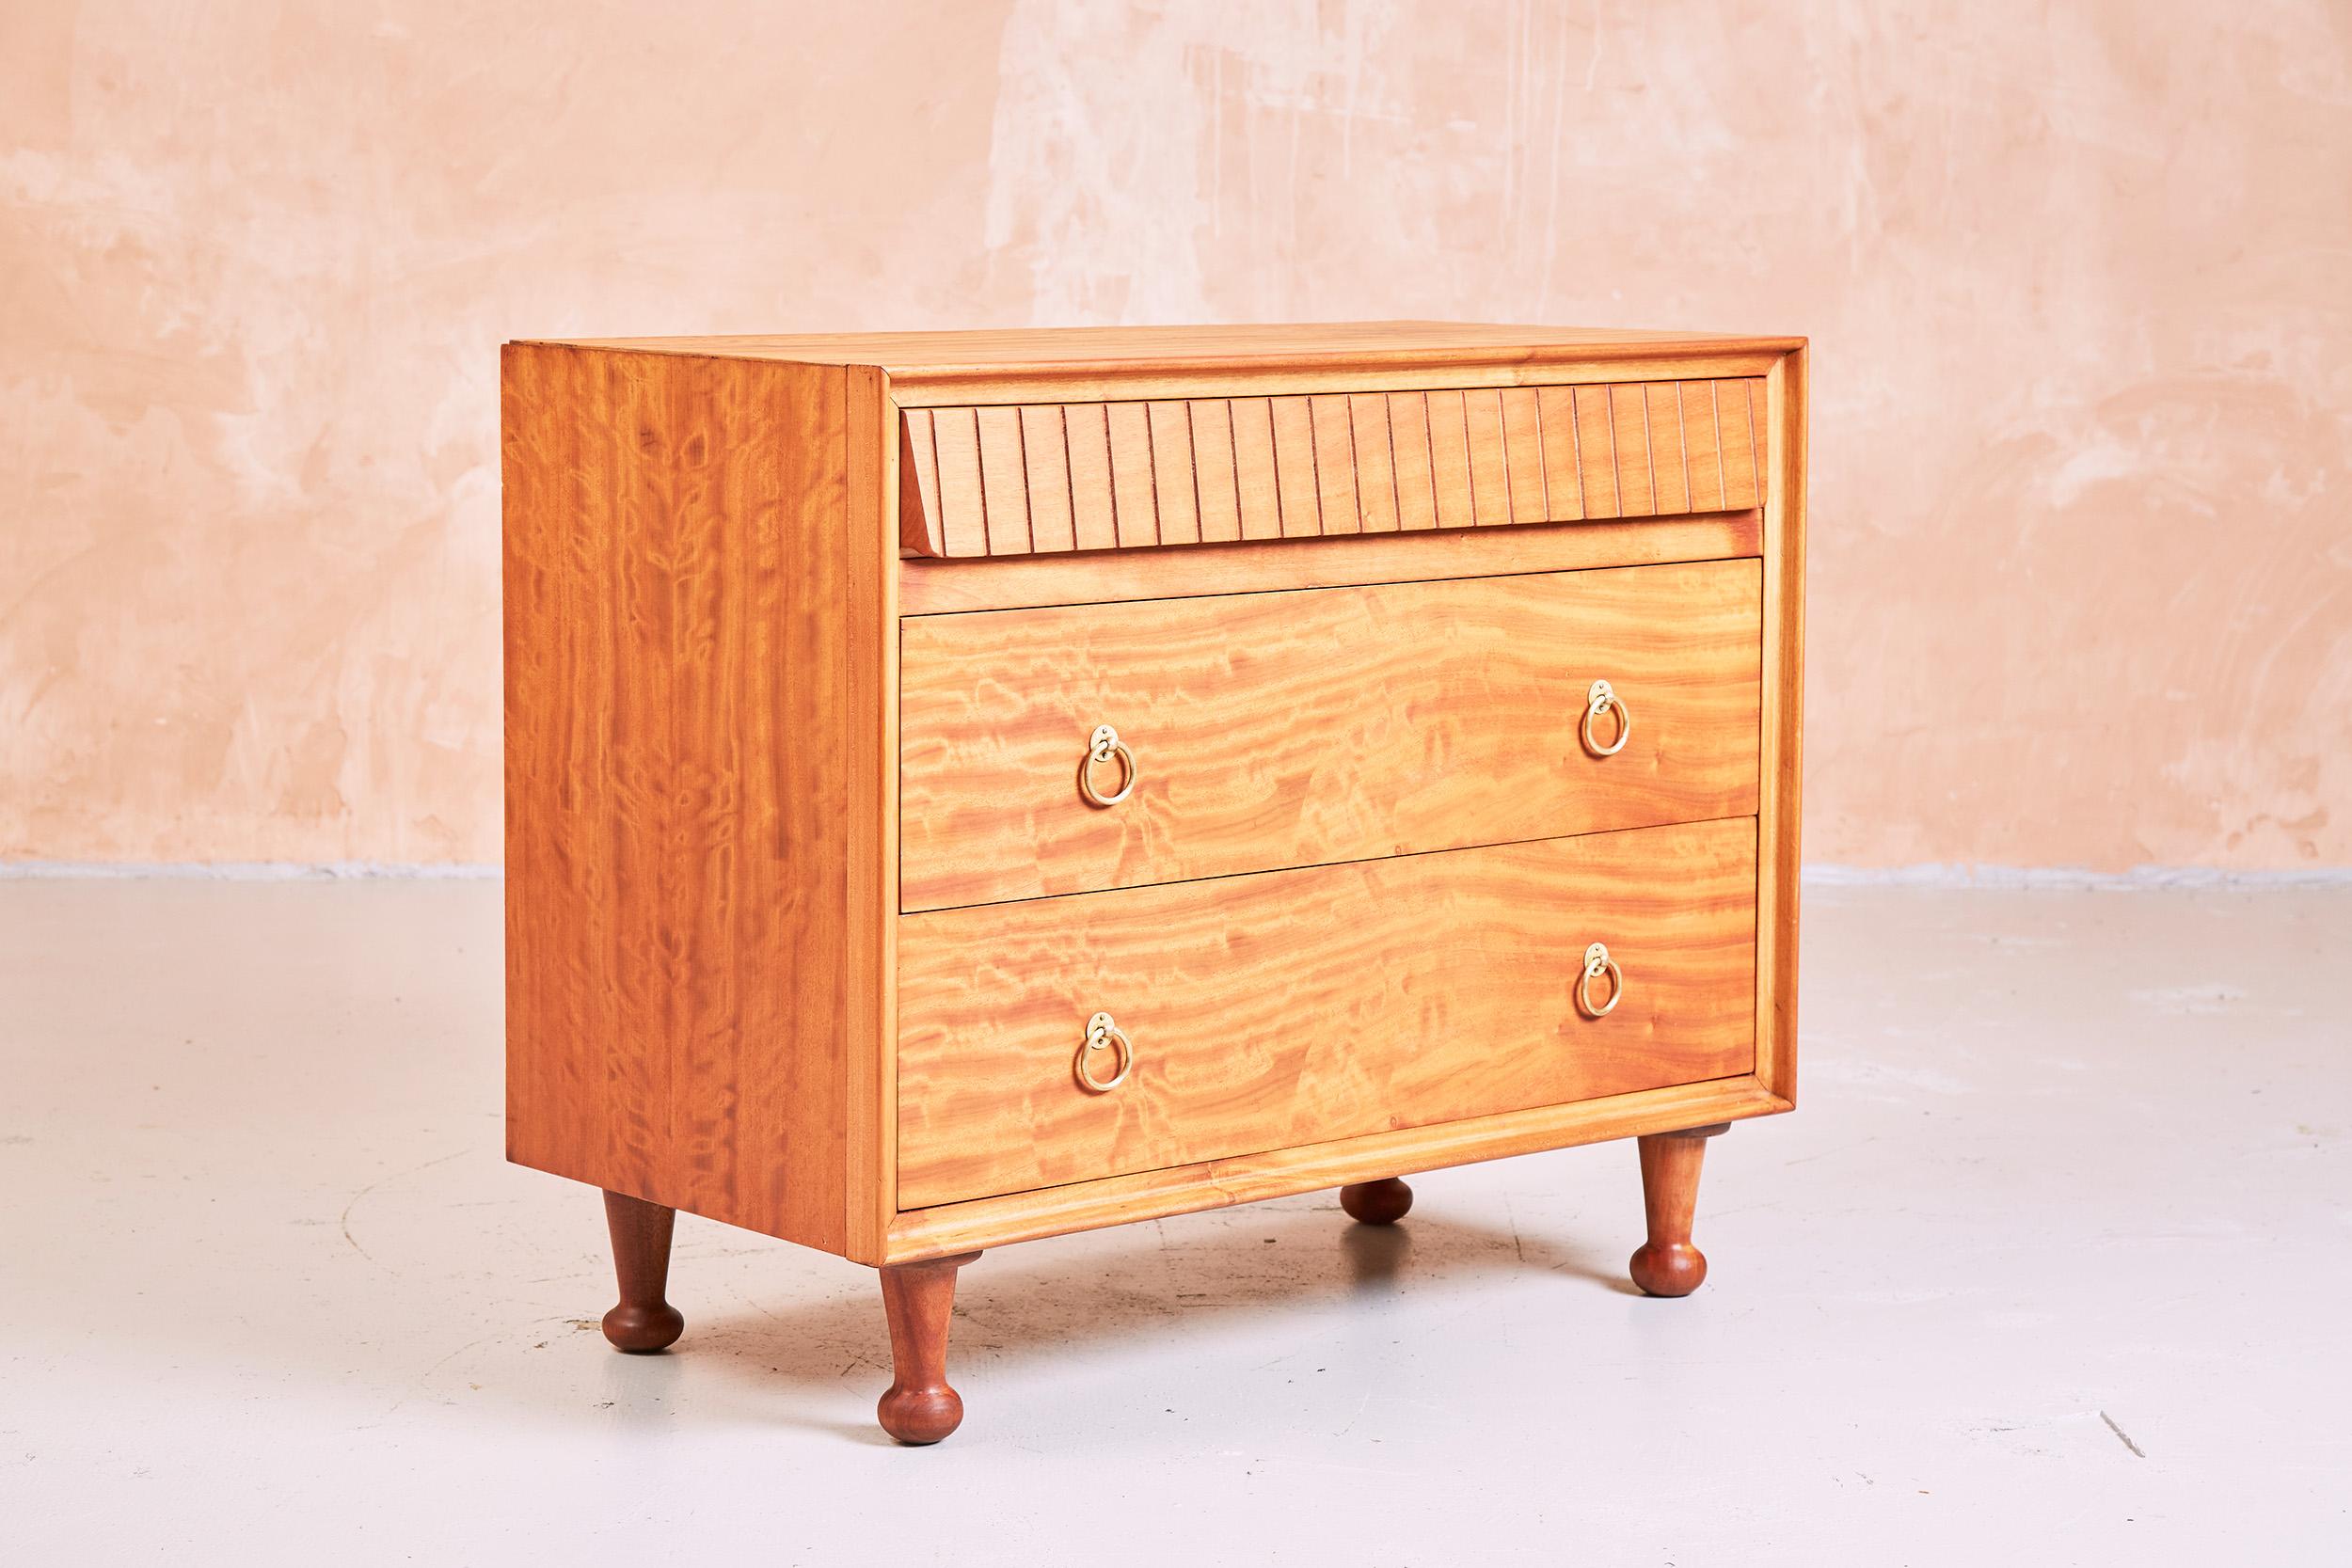 Produite pour Heals dans les années 1950, cette commode est fabriquée en bois de satin.
Le dessin est attribué à Andrew Milne.

Avec trois tiroirs, dont le plus haut est cannelé, la commode repose sur des pieds tournés.